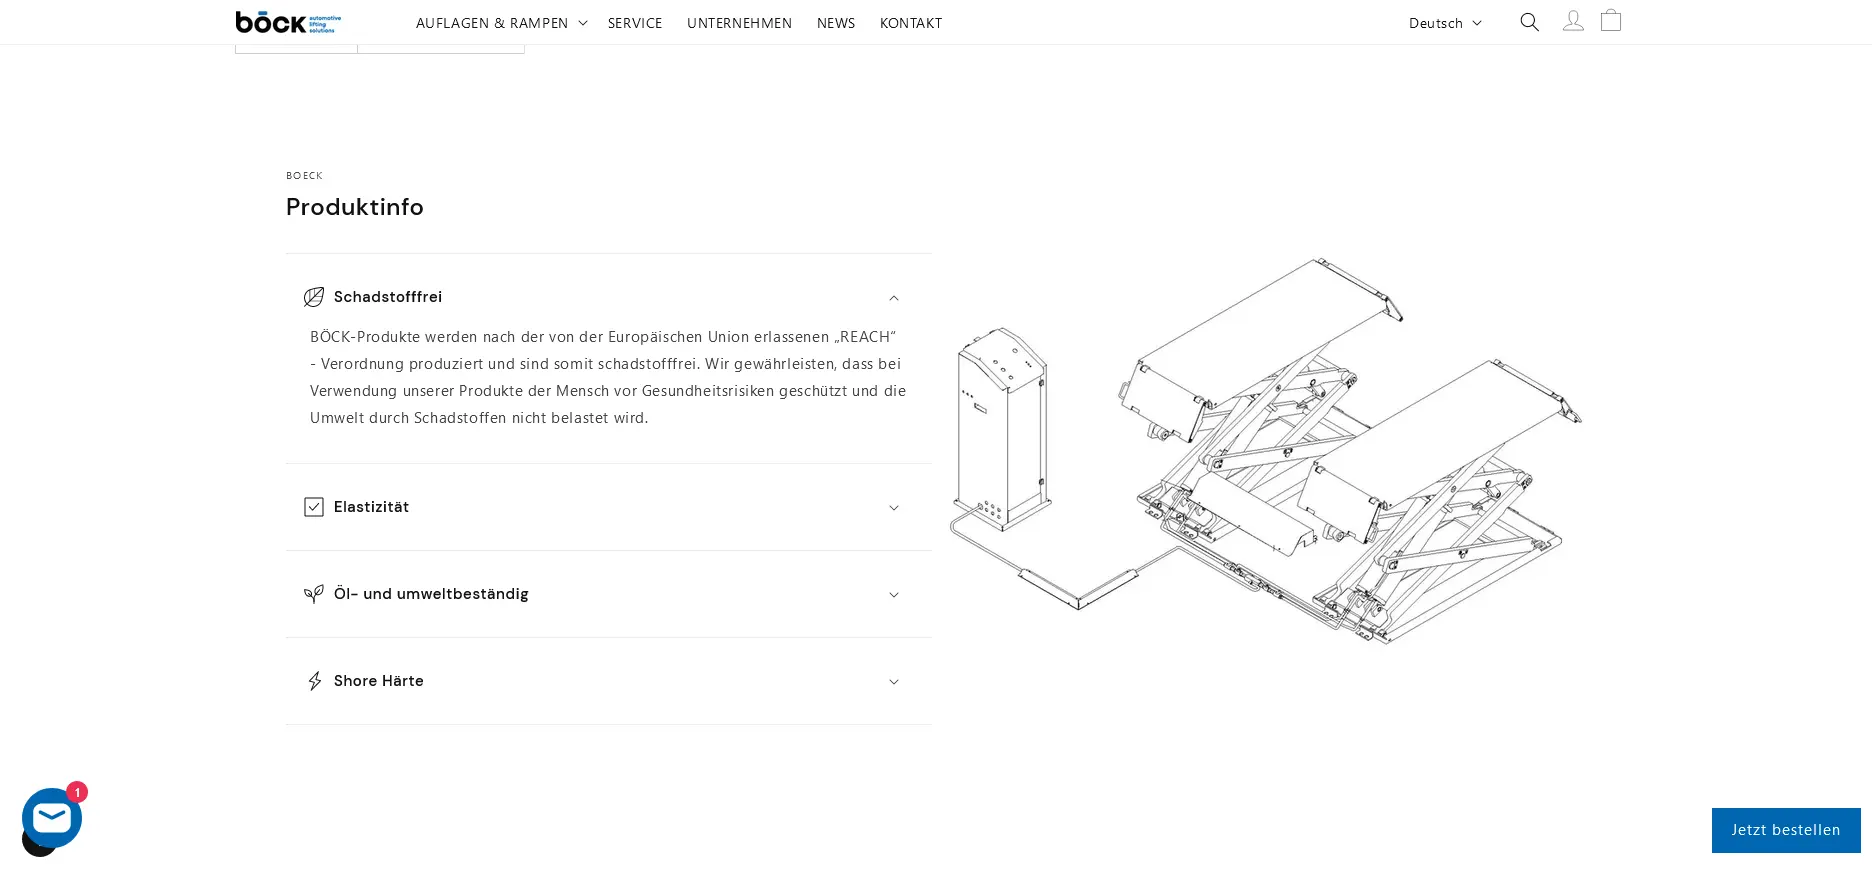 Böck webdesign by 3oneseven